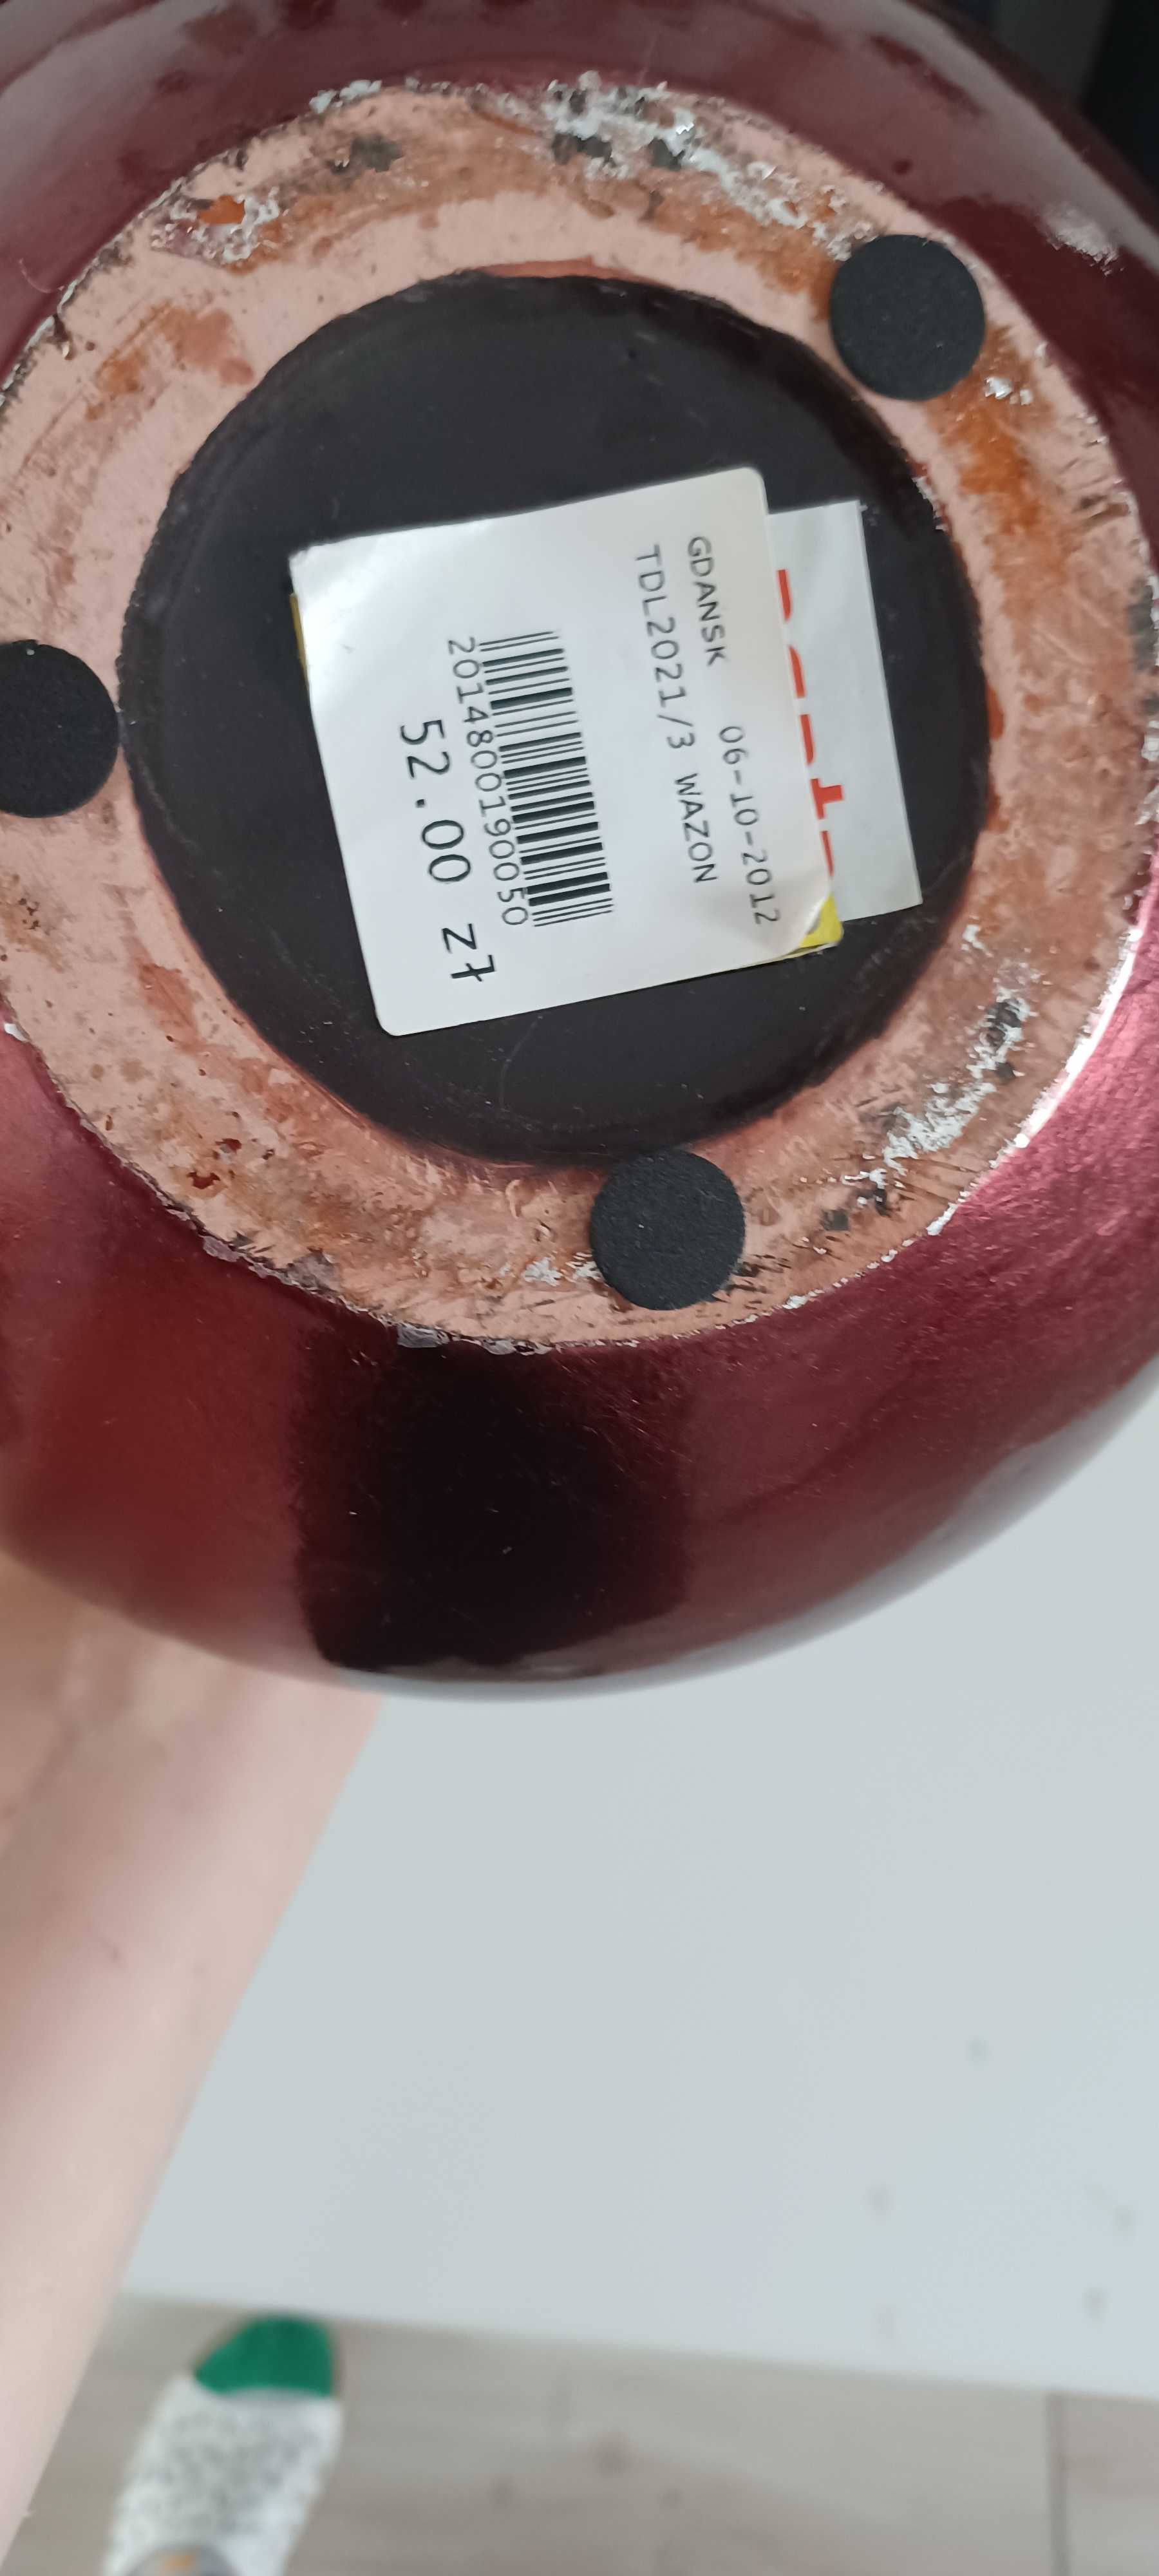 2 wazony bania, kolor rubinowy, produkt ceramika wietnamska